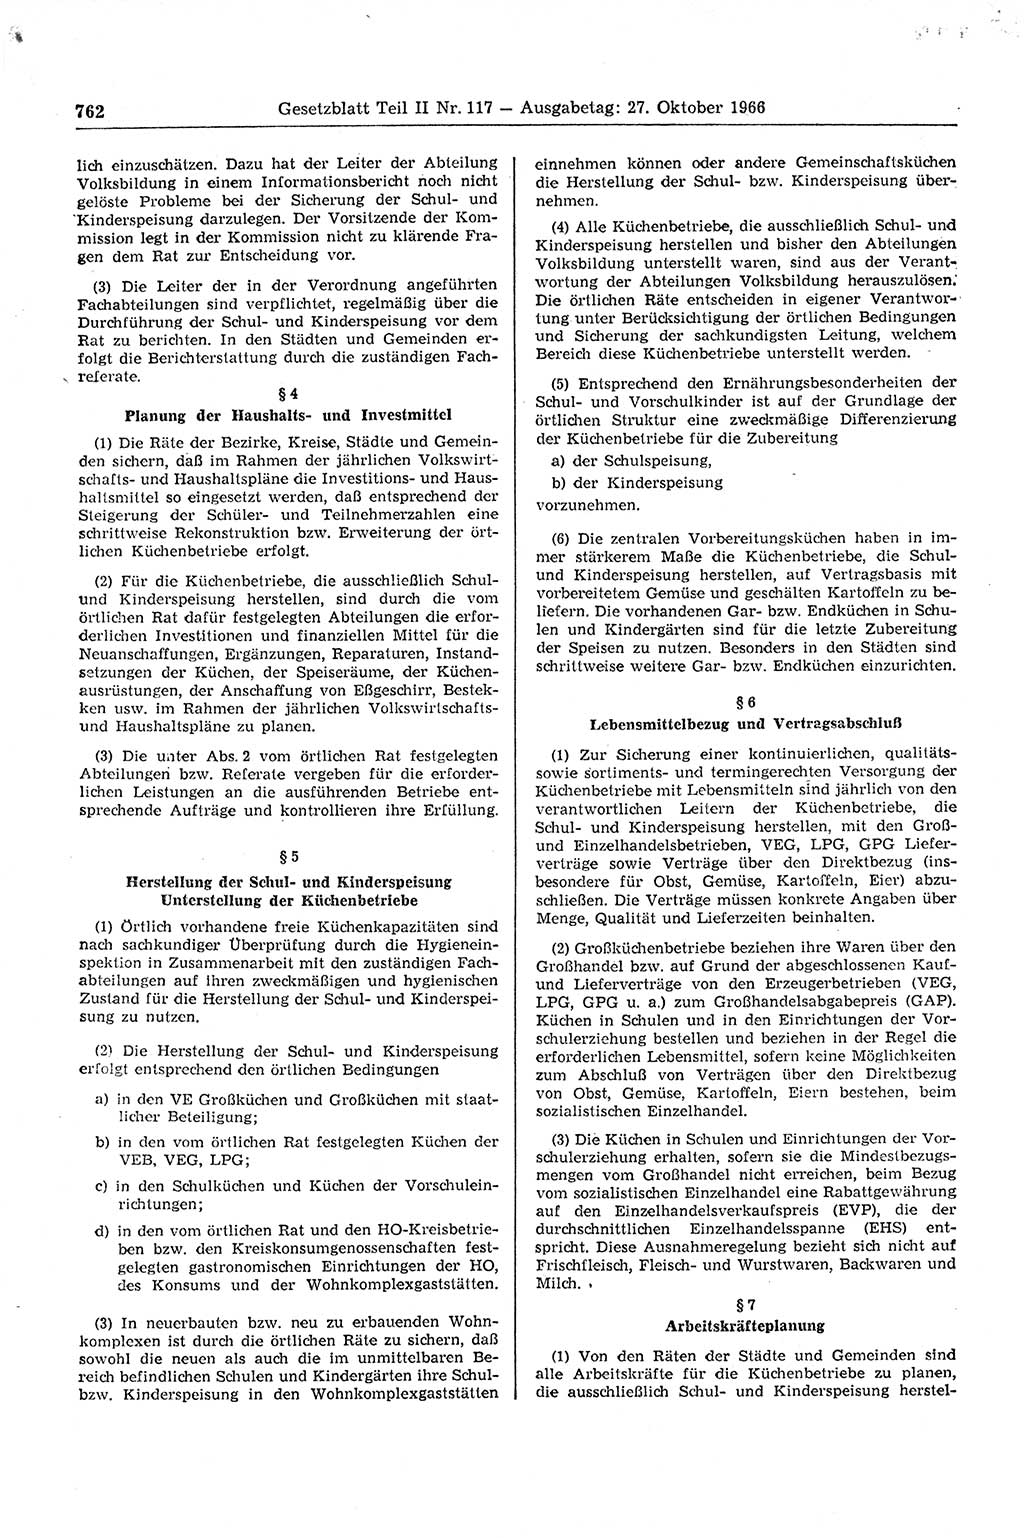 Gesetzblatt (GBl.) der Deutschen Demokratischen Republik (DDR) Teil ⅠⅠ 1966, Seite 762 (GBl. DDR ⅠⅠ 1966, S. 762)